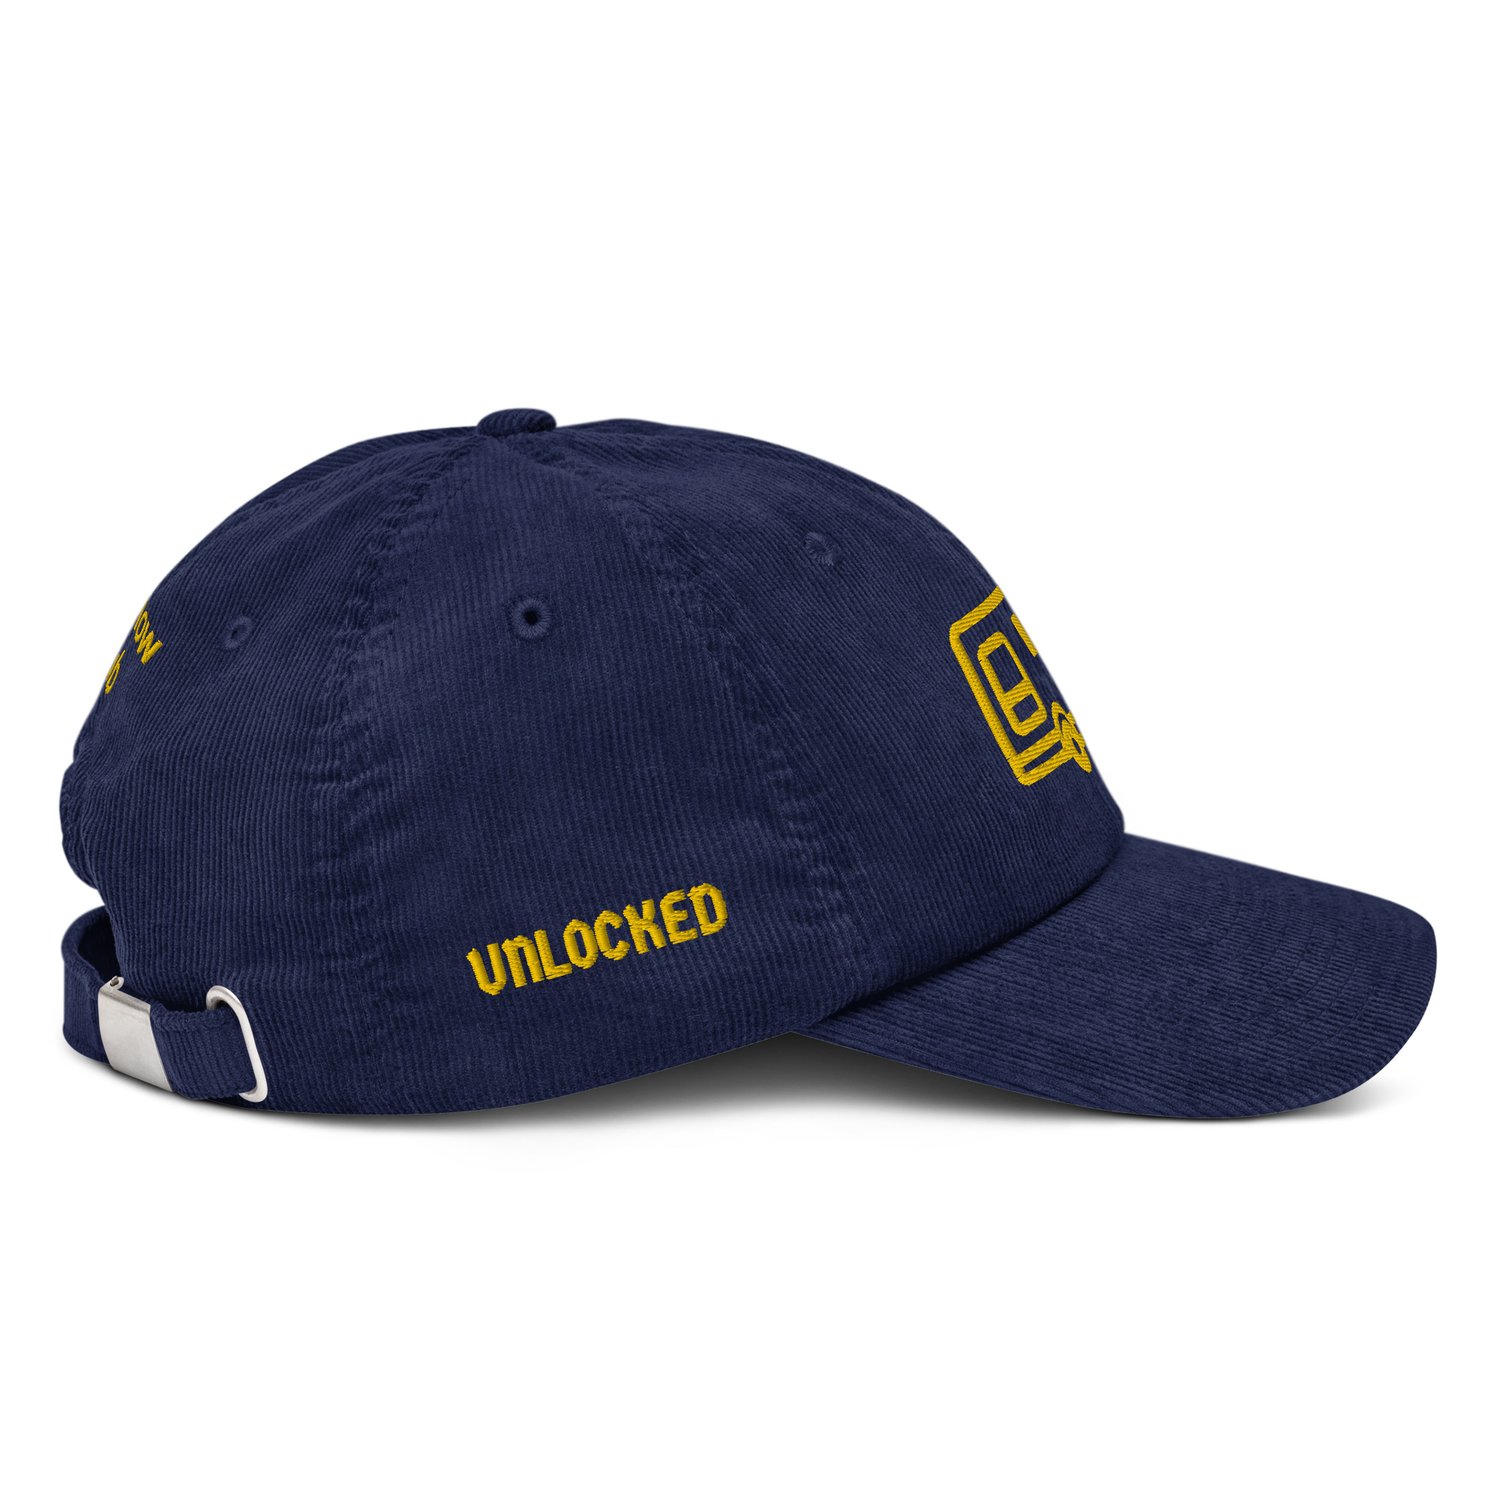 Image of "FREEDOM UNLOCKED" Corduroy hat